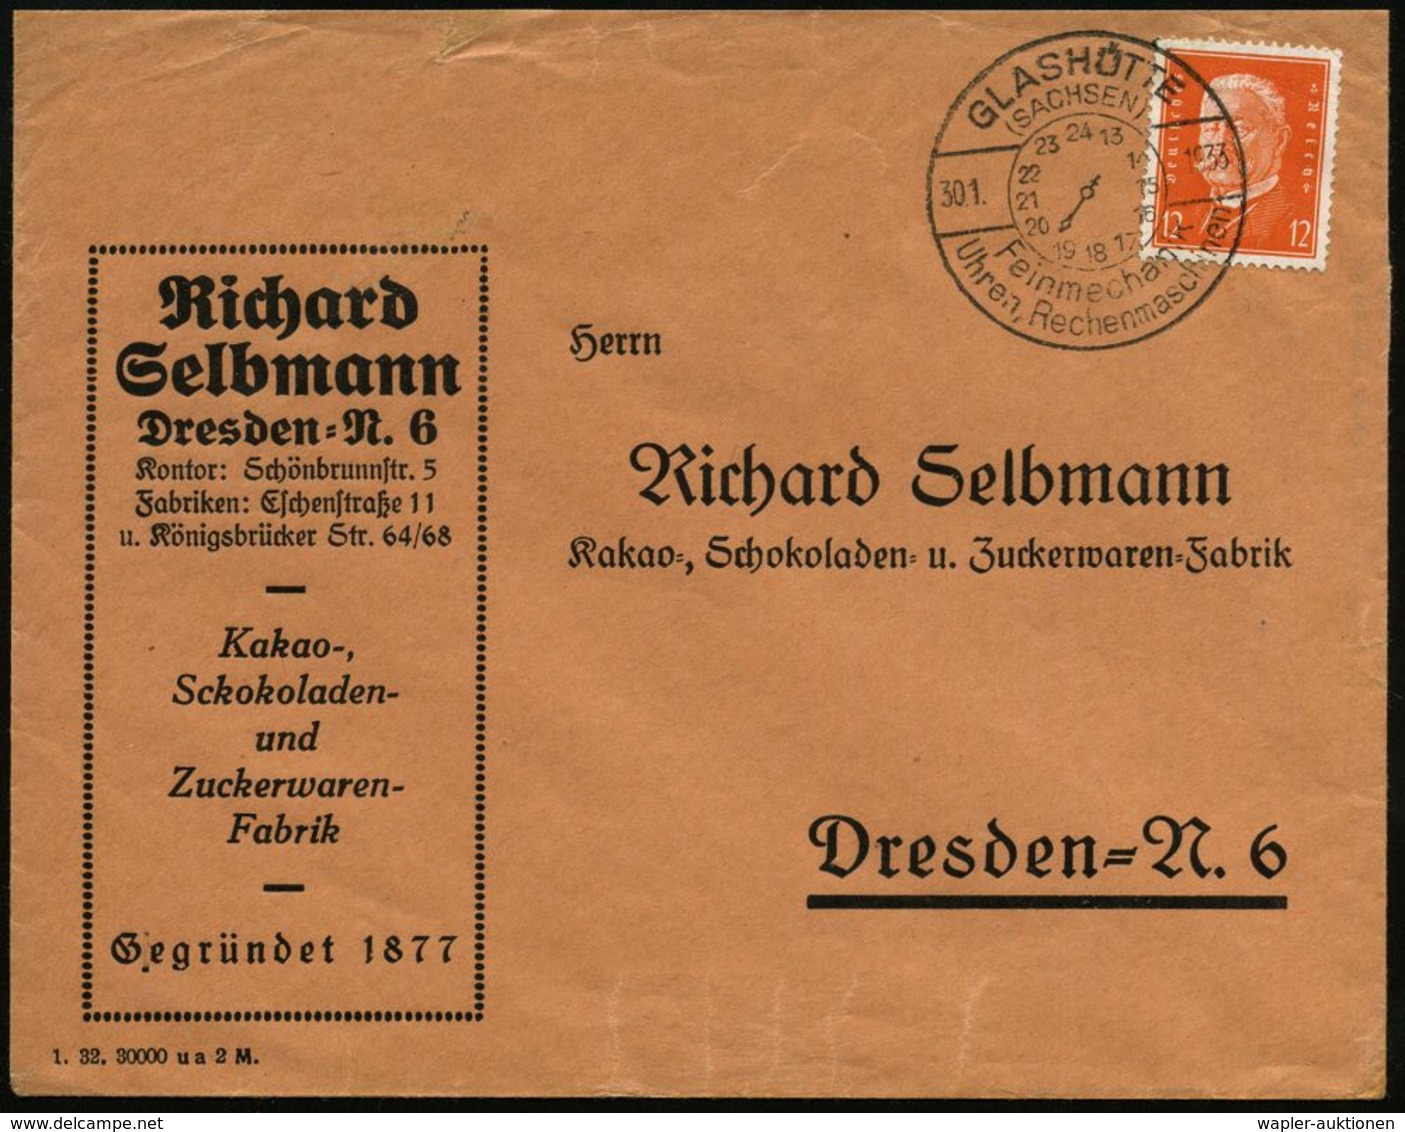 UHR / ZEITMESSUNG : GLASHÜTTE/ (SACHSEN)/ Feinmechanik/ Uhren,Rechenmaschinen 1933 (30.1.) HWSt Mit Zifferblatt (13-24 U - Uhrmacherei